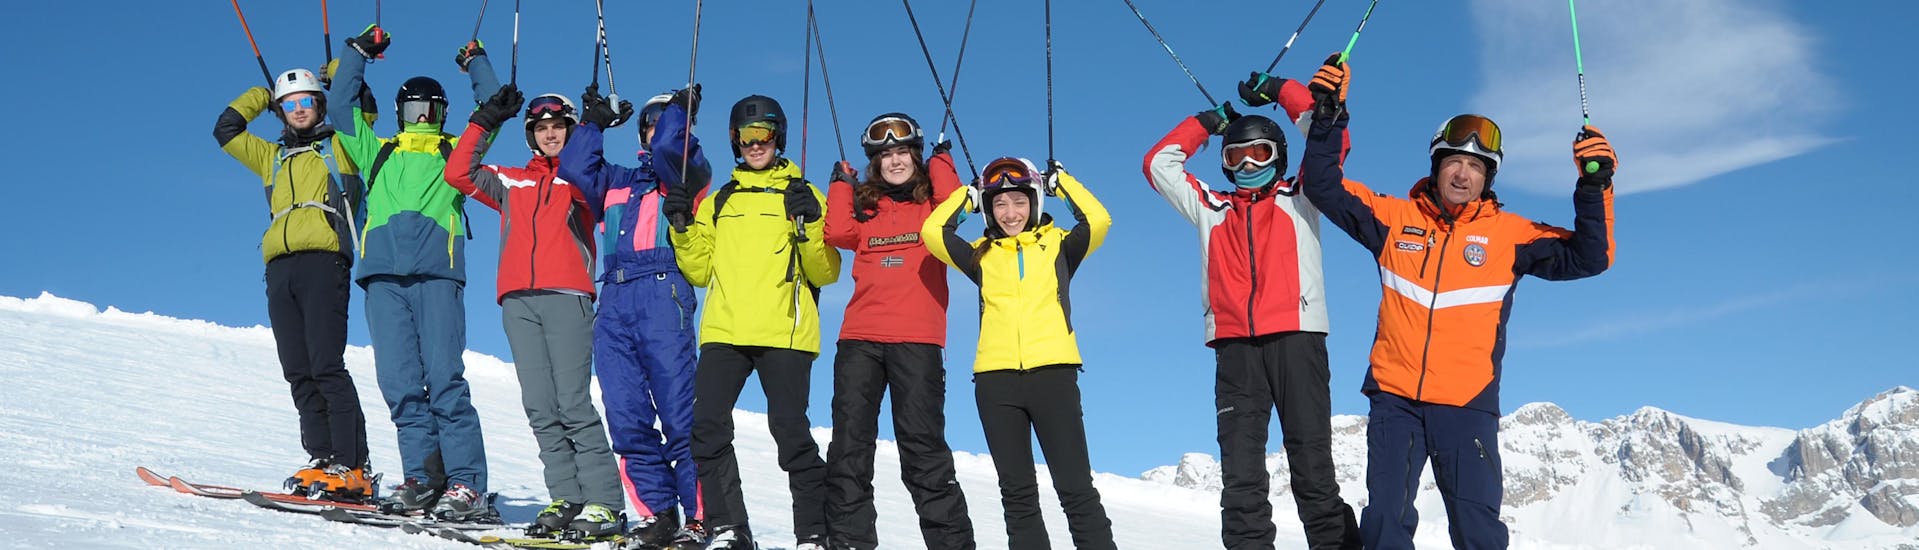 Blije deelnemers in Falcade tijdens een van de skilessen voor volwassenen voor alle niveaus.